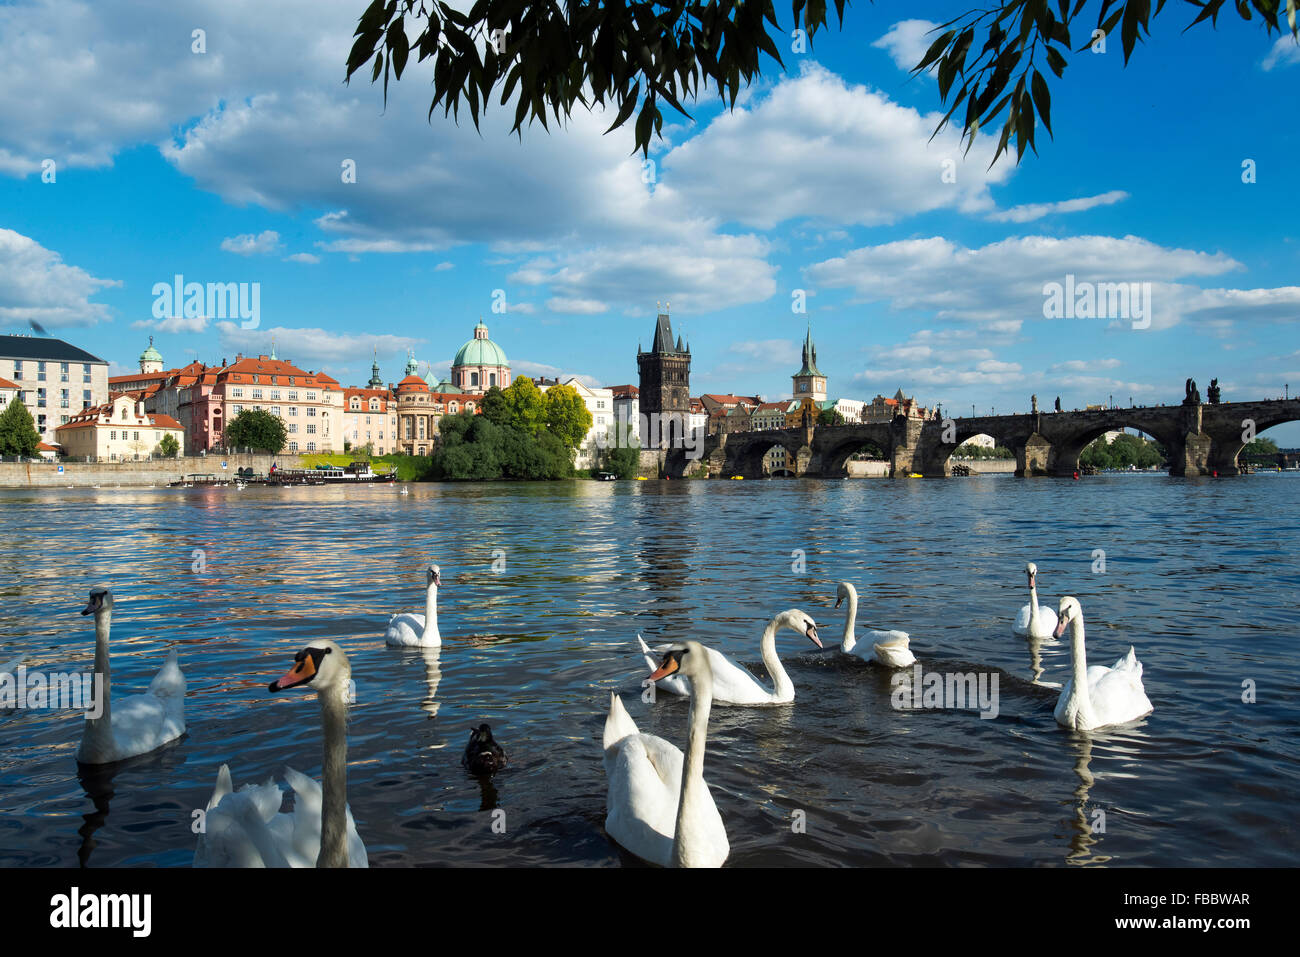 Cygnes sur la rivière Vitava de petit quartier à la recherche de Pont Charles et de la Vieille Ville, Prague, République Tchèque Banque D'Images